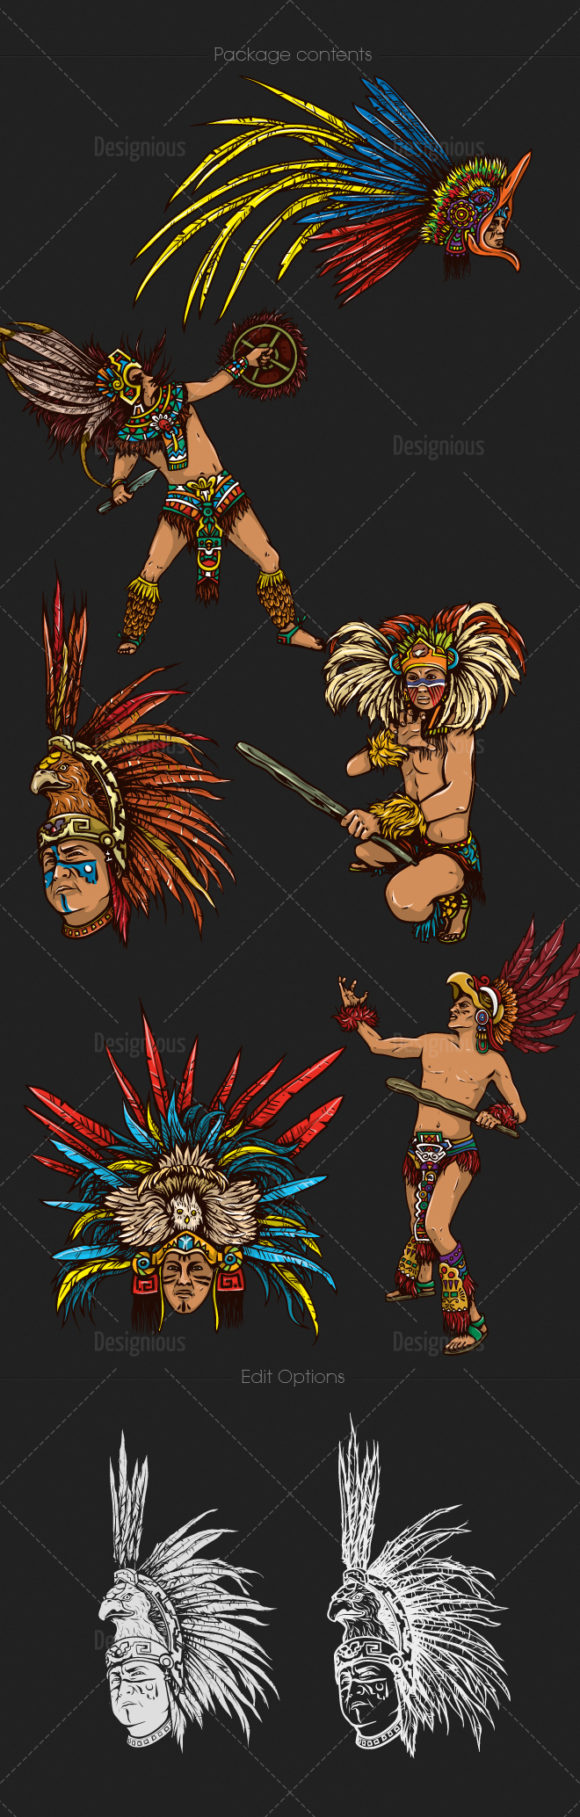 Aztec Warriors Vector Pack 1 2